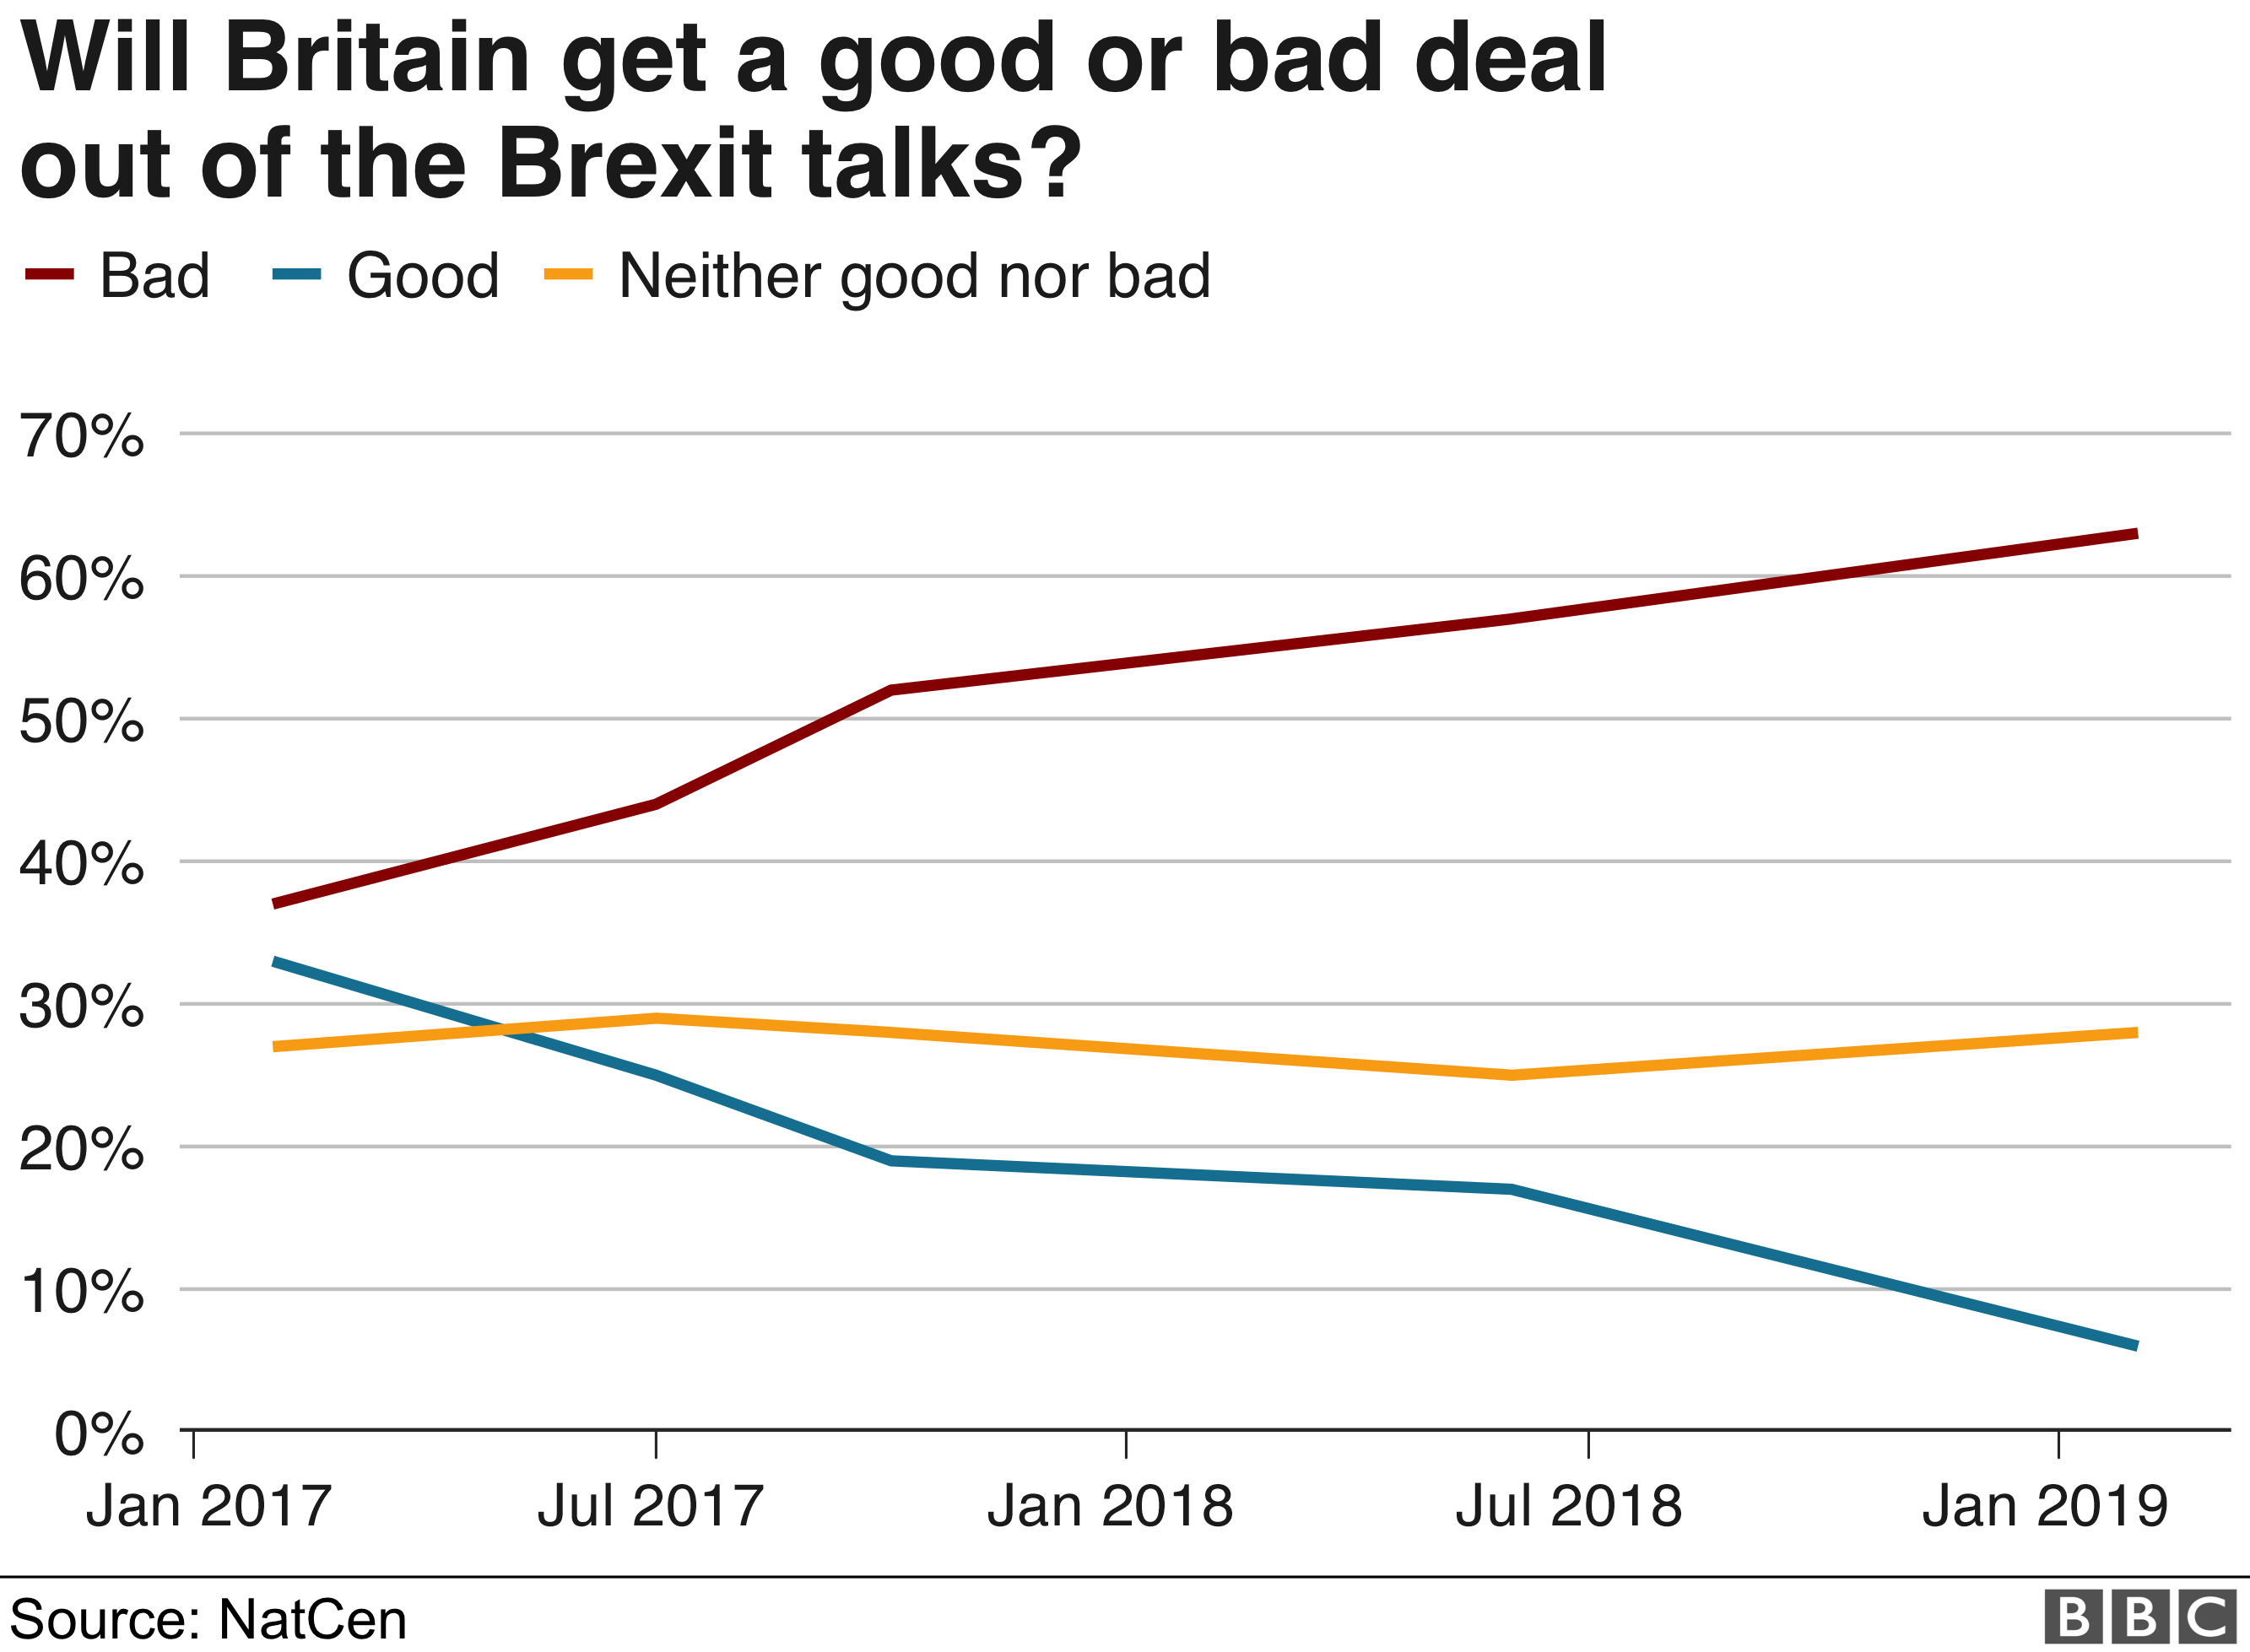 Диаграмма, показывающая мнение о том, получит ли Великобритания хорошую сделку или плохую сделку